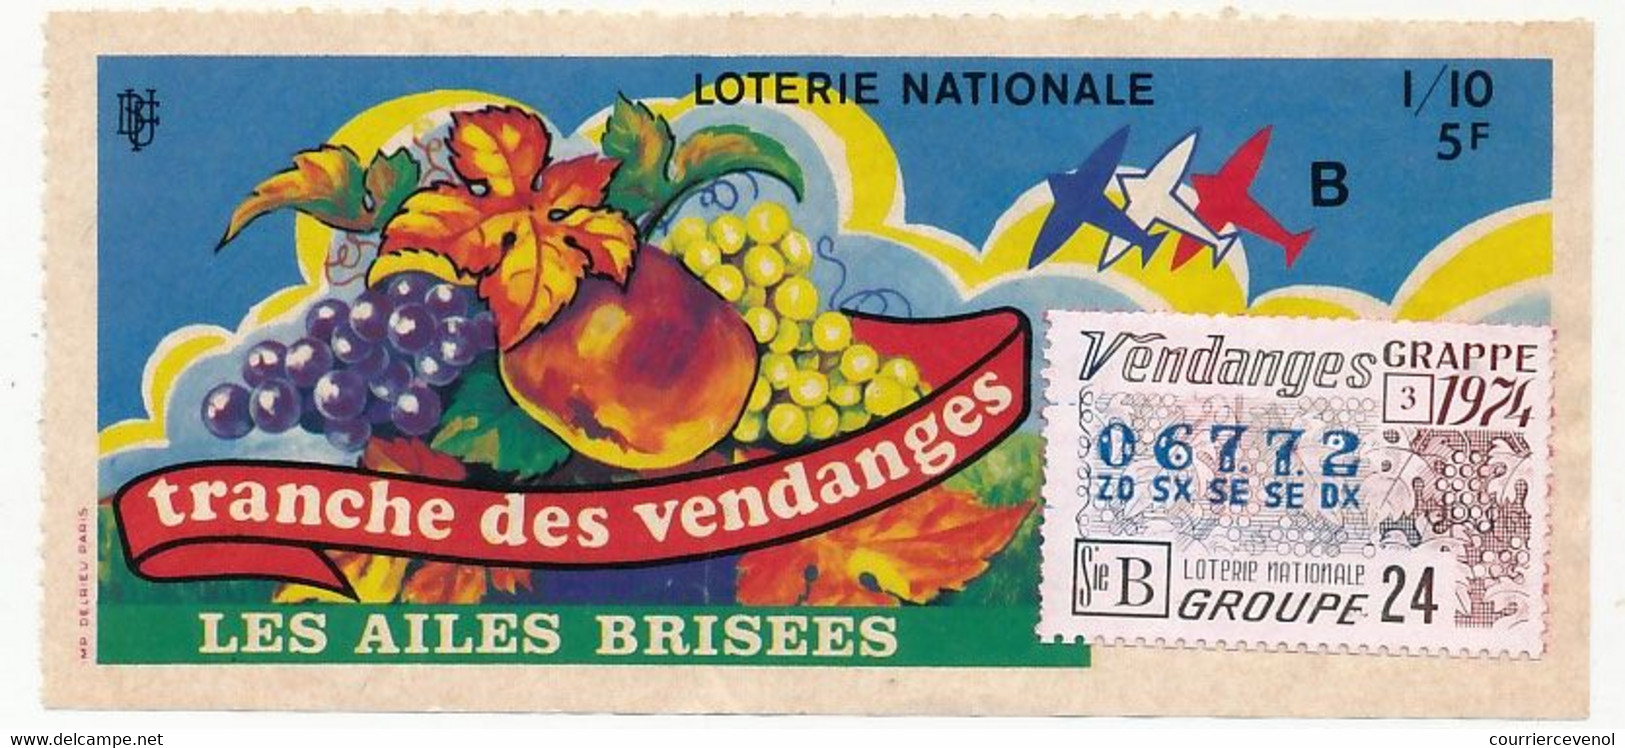 FRANCE - Loterie Nationale - 1/10ème - Les Ailes Brisées - Tranche Des Vendanges - 1974 - Loterijbiljetten